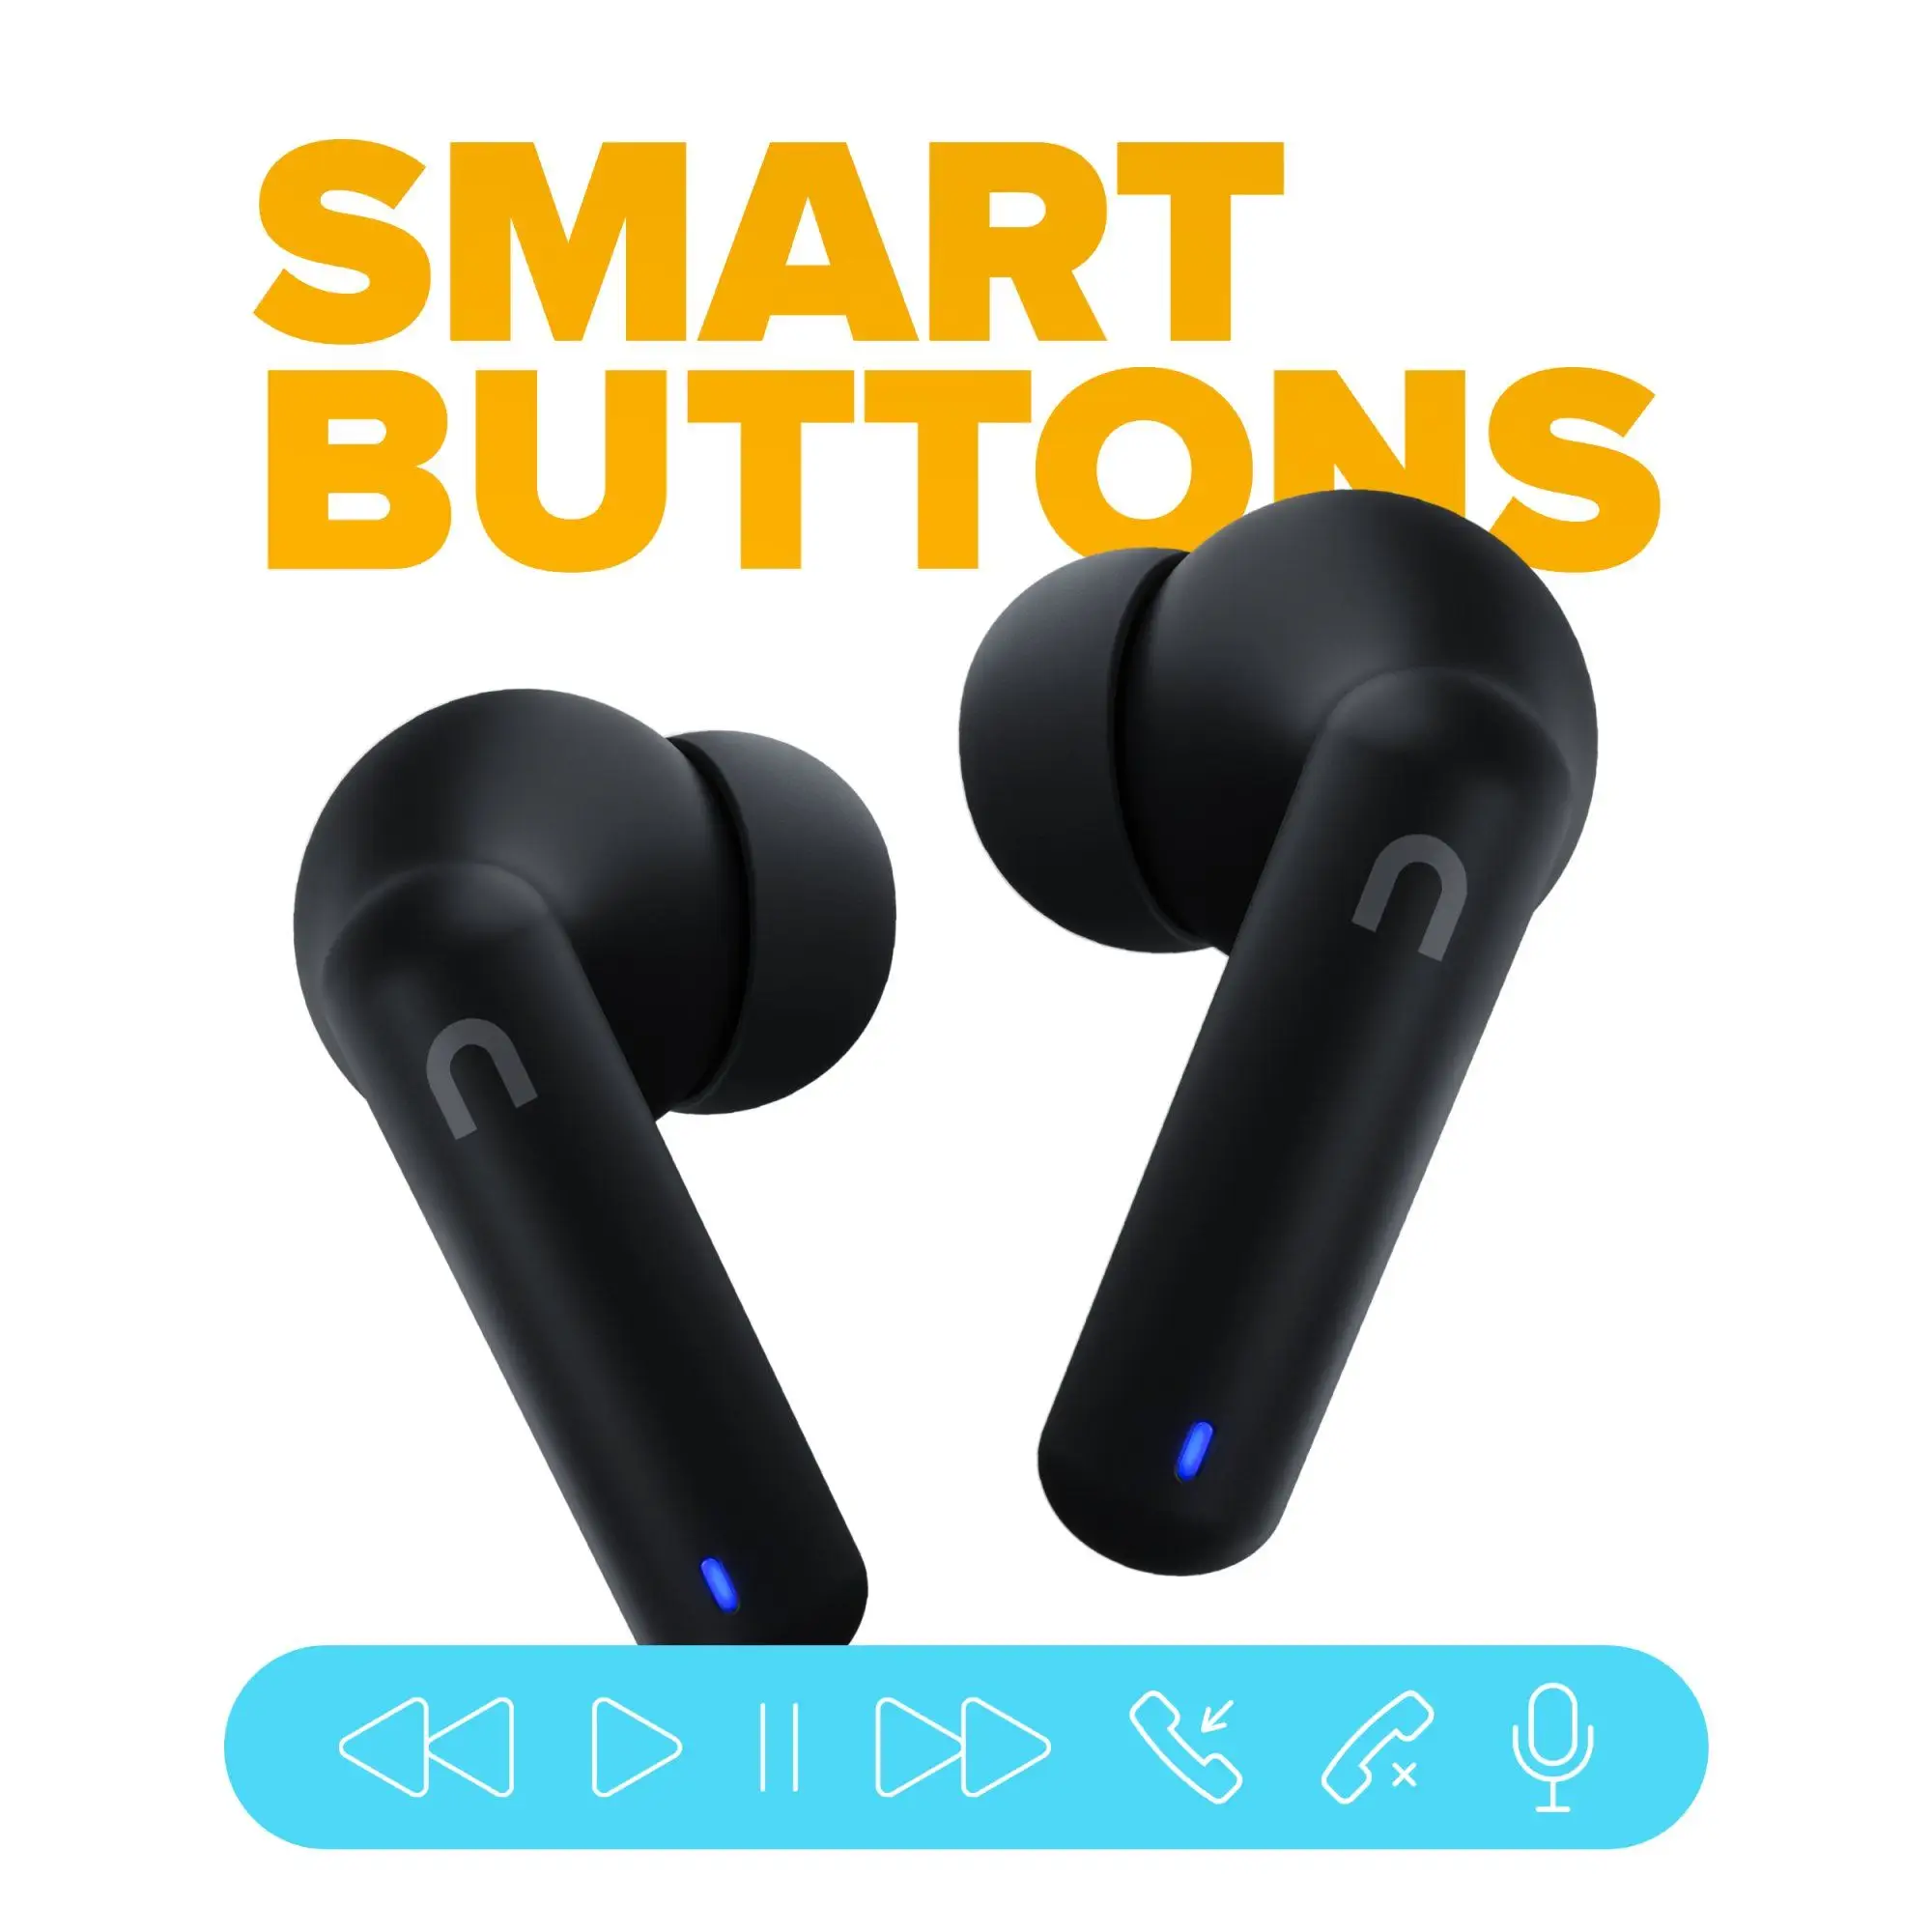  Bluetooth sluchátka niceboy hive pins 3 handsfree mikrofon aplikace ion ekvalizér skvělý zvuk dlouhá výdrž na nabití nabíjecí pouzdro 